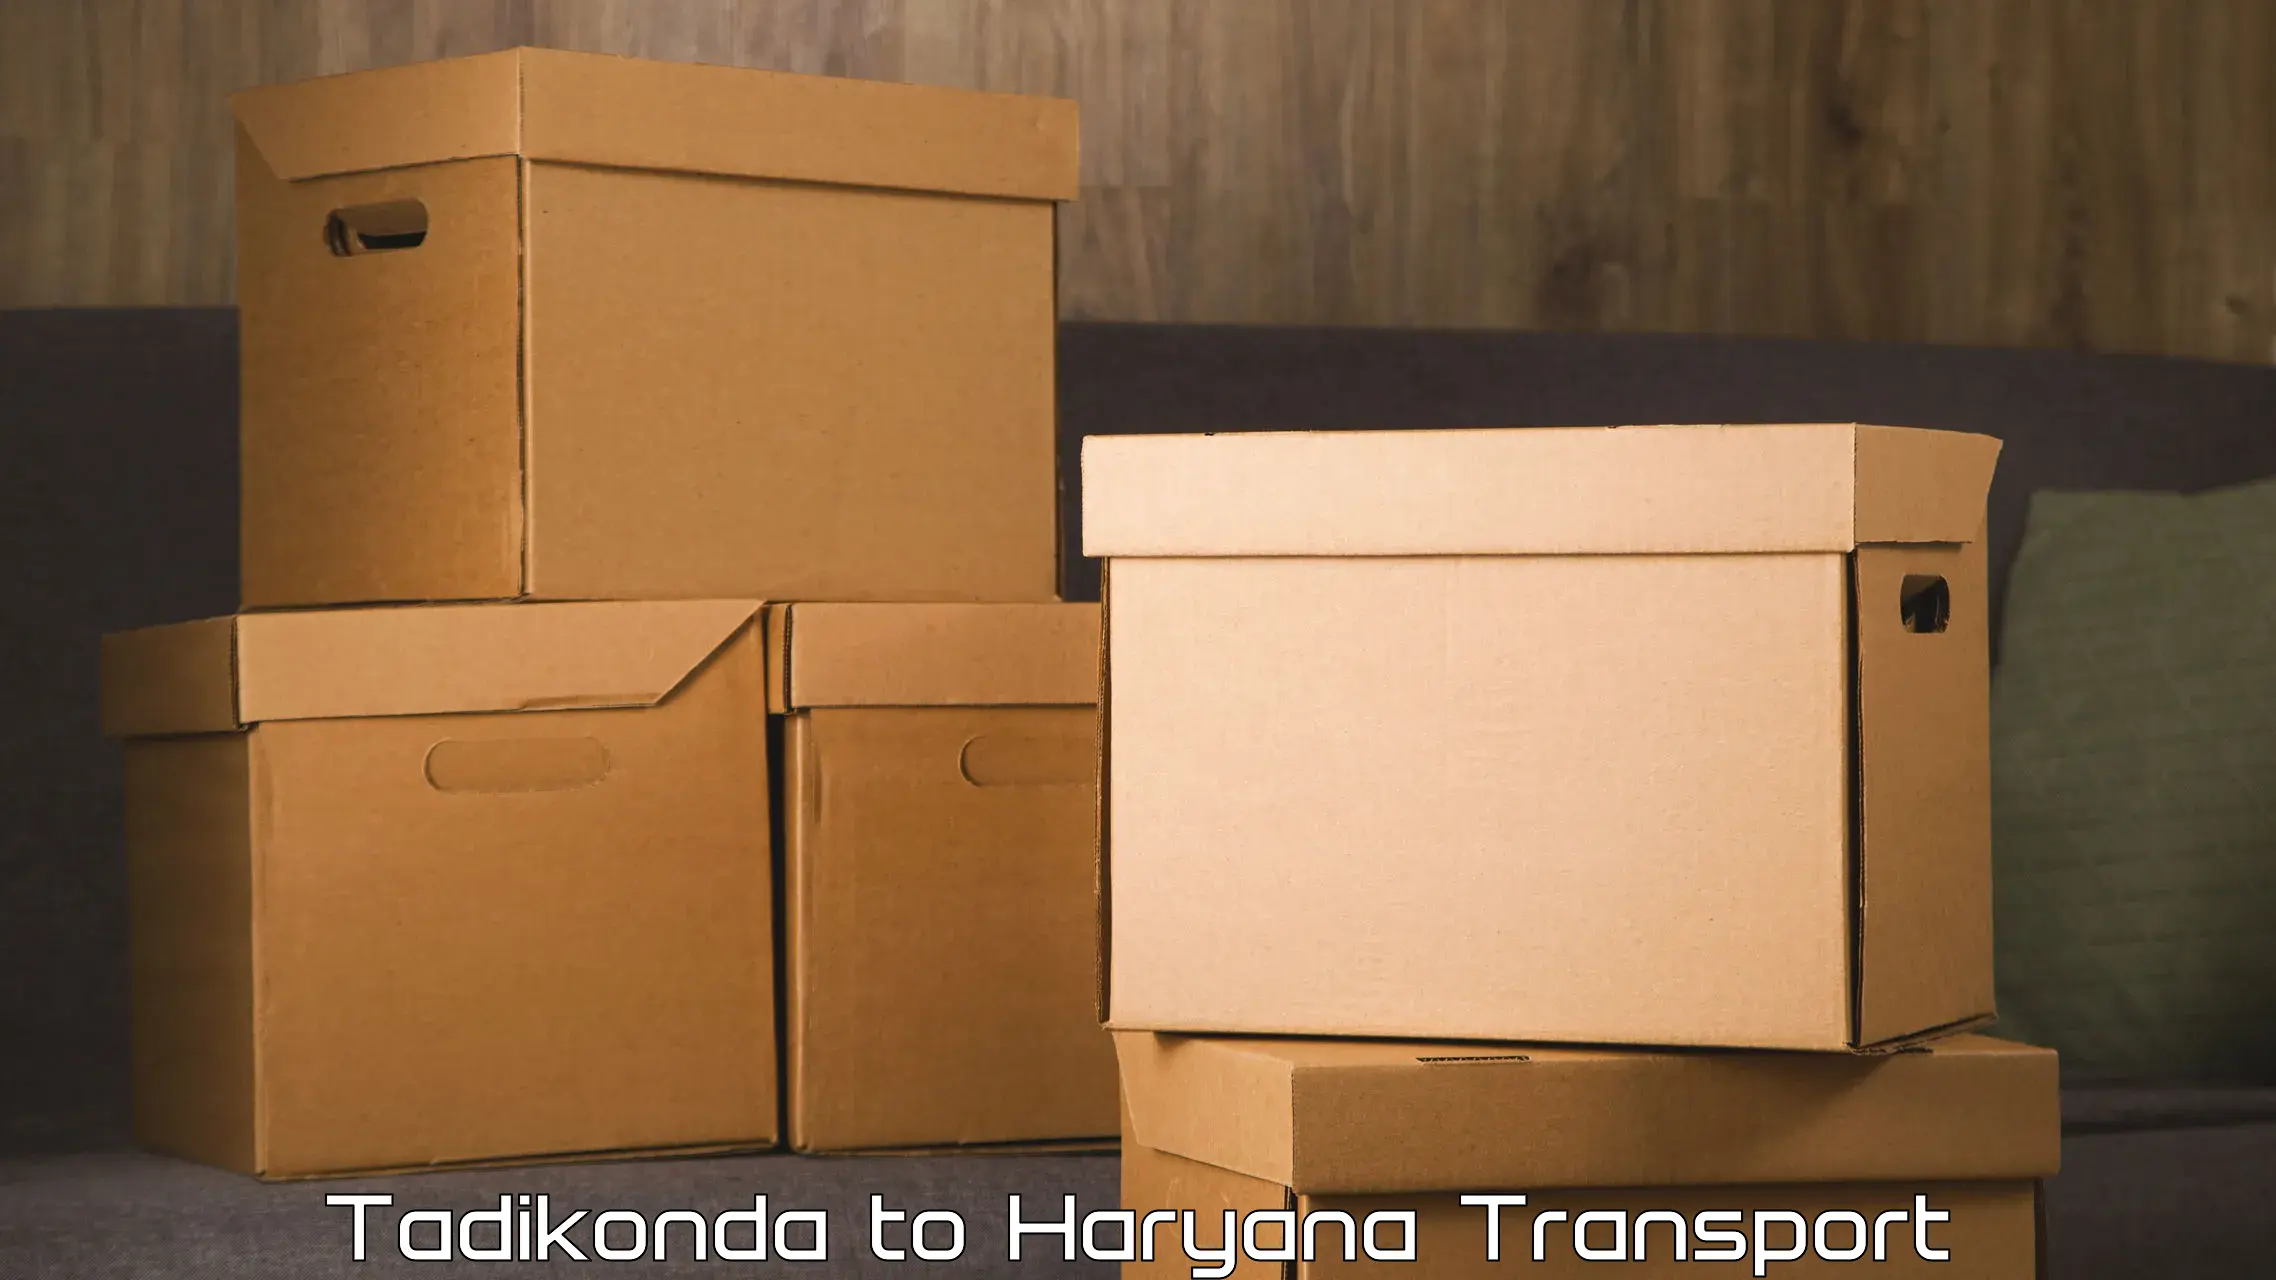 Transport shared services Tadikonda to Haryana